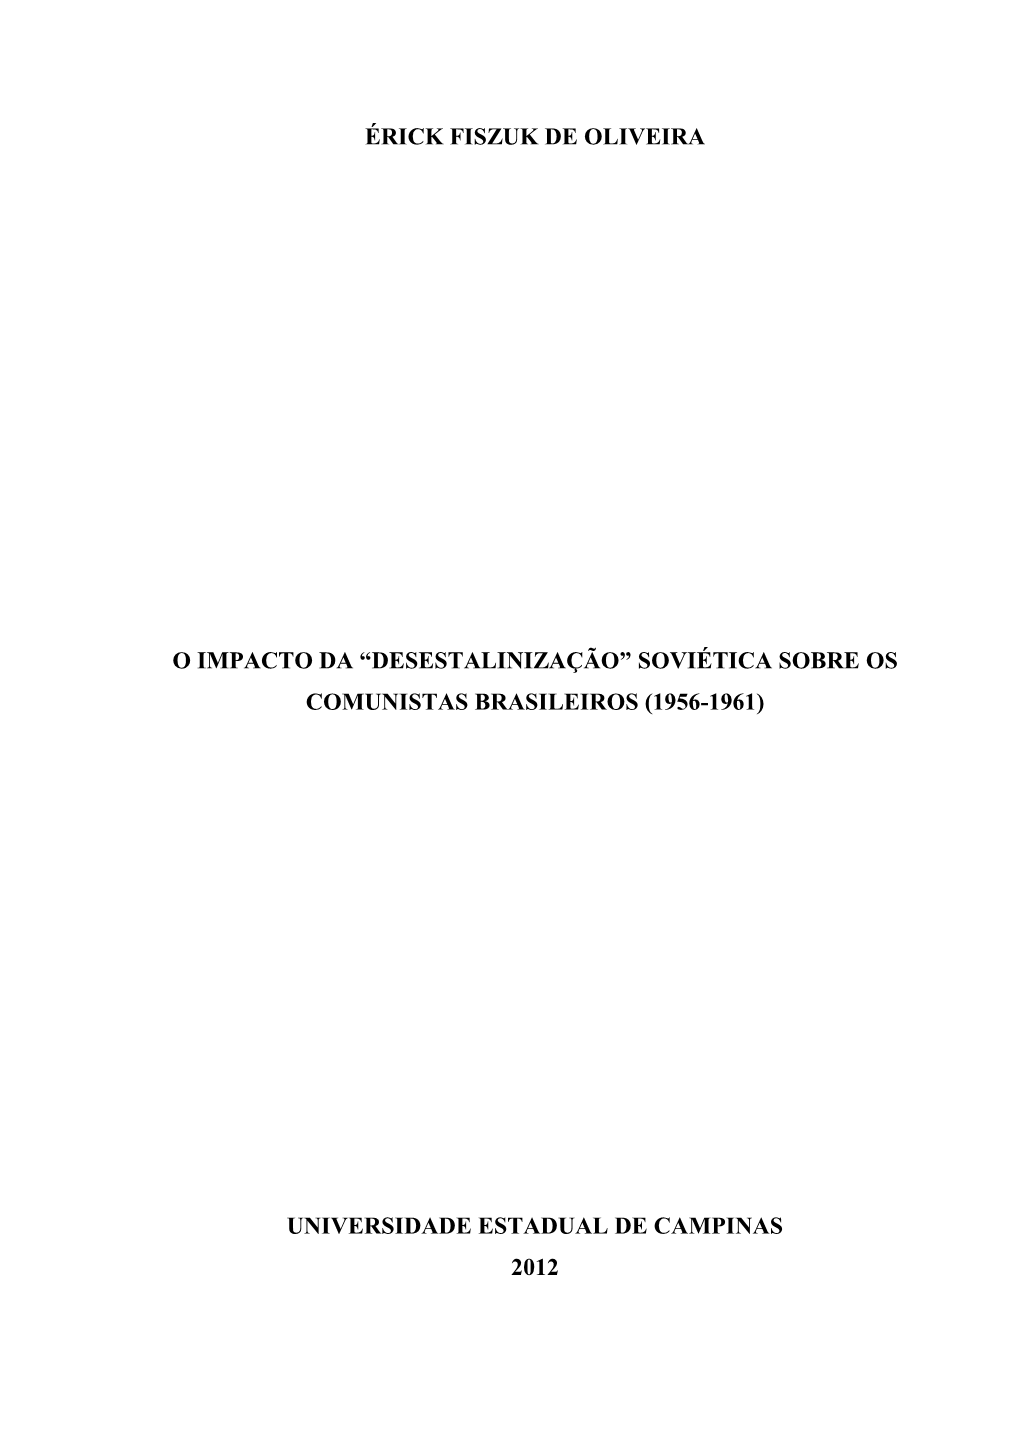 Desestalinização” Soviética Sobre Os Comunistas Brasileiros (1956-1961)